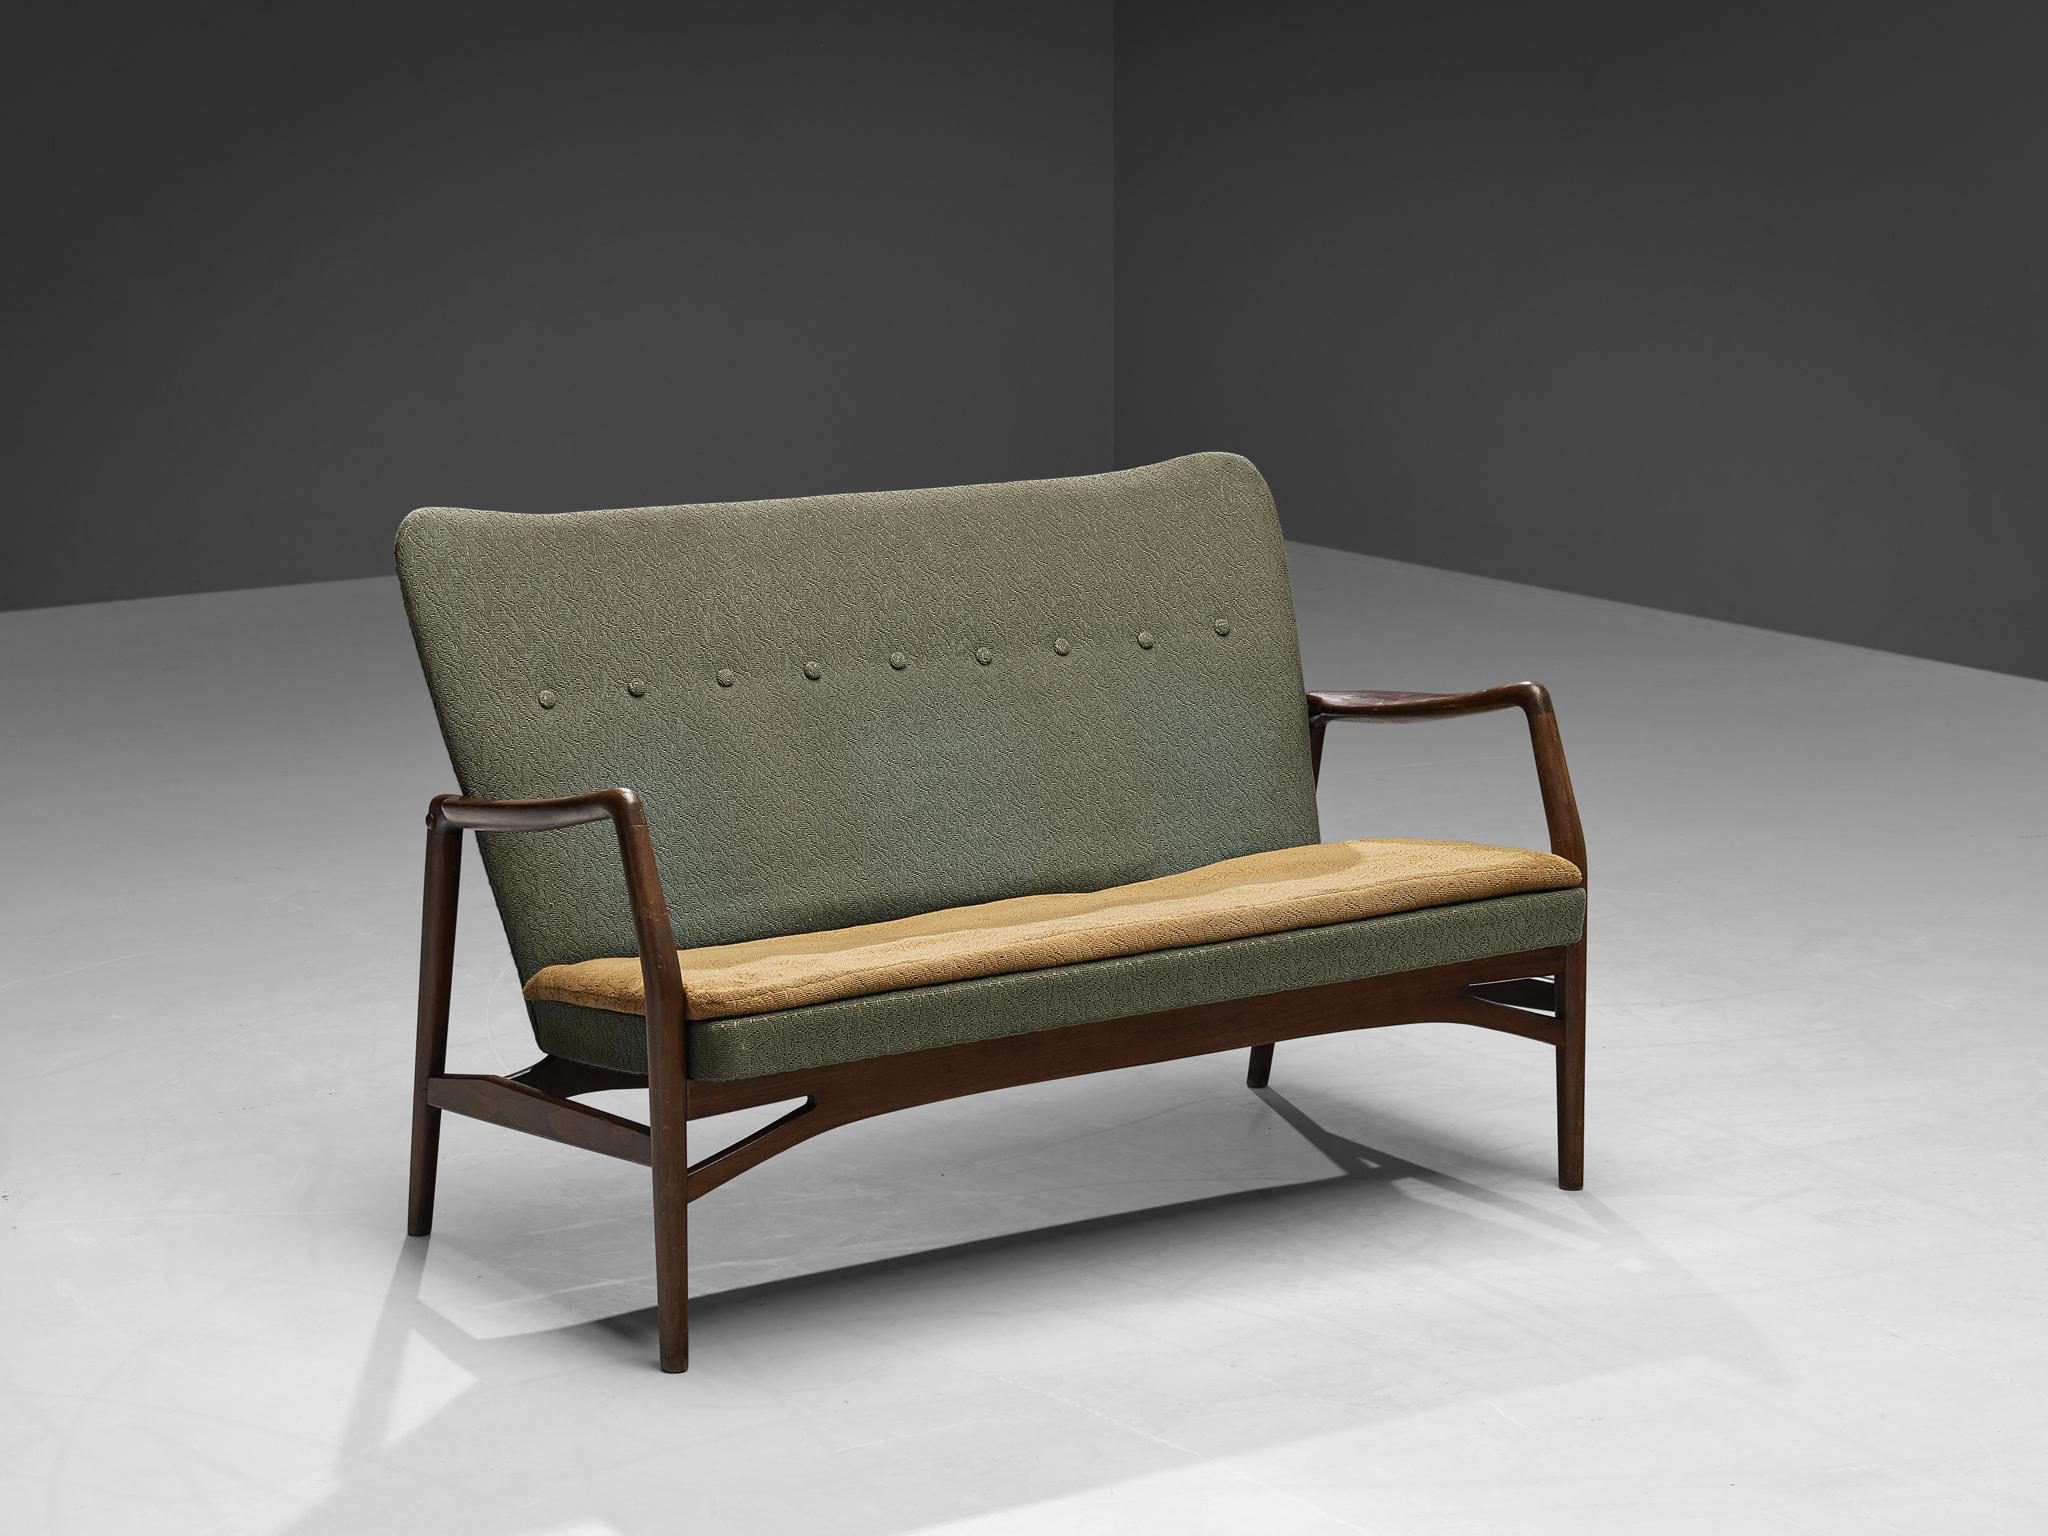 Kurt Olsen für A. Andersen & Bohm, Liebessitz, Holz, Stoff, Dänemark, 1951.

Atemberaubender dänischer Sessel, entworfen von Kurt Olsen. Dieses Sofa hat eine skulpturale Qualität und wirkt leicht. Dies wird vor allem durch die schwebenden